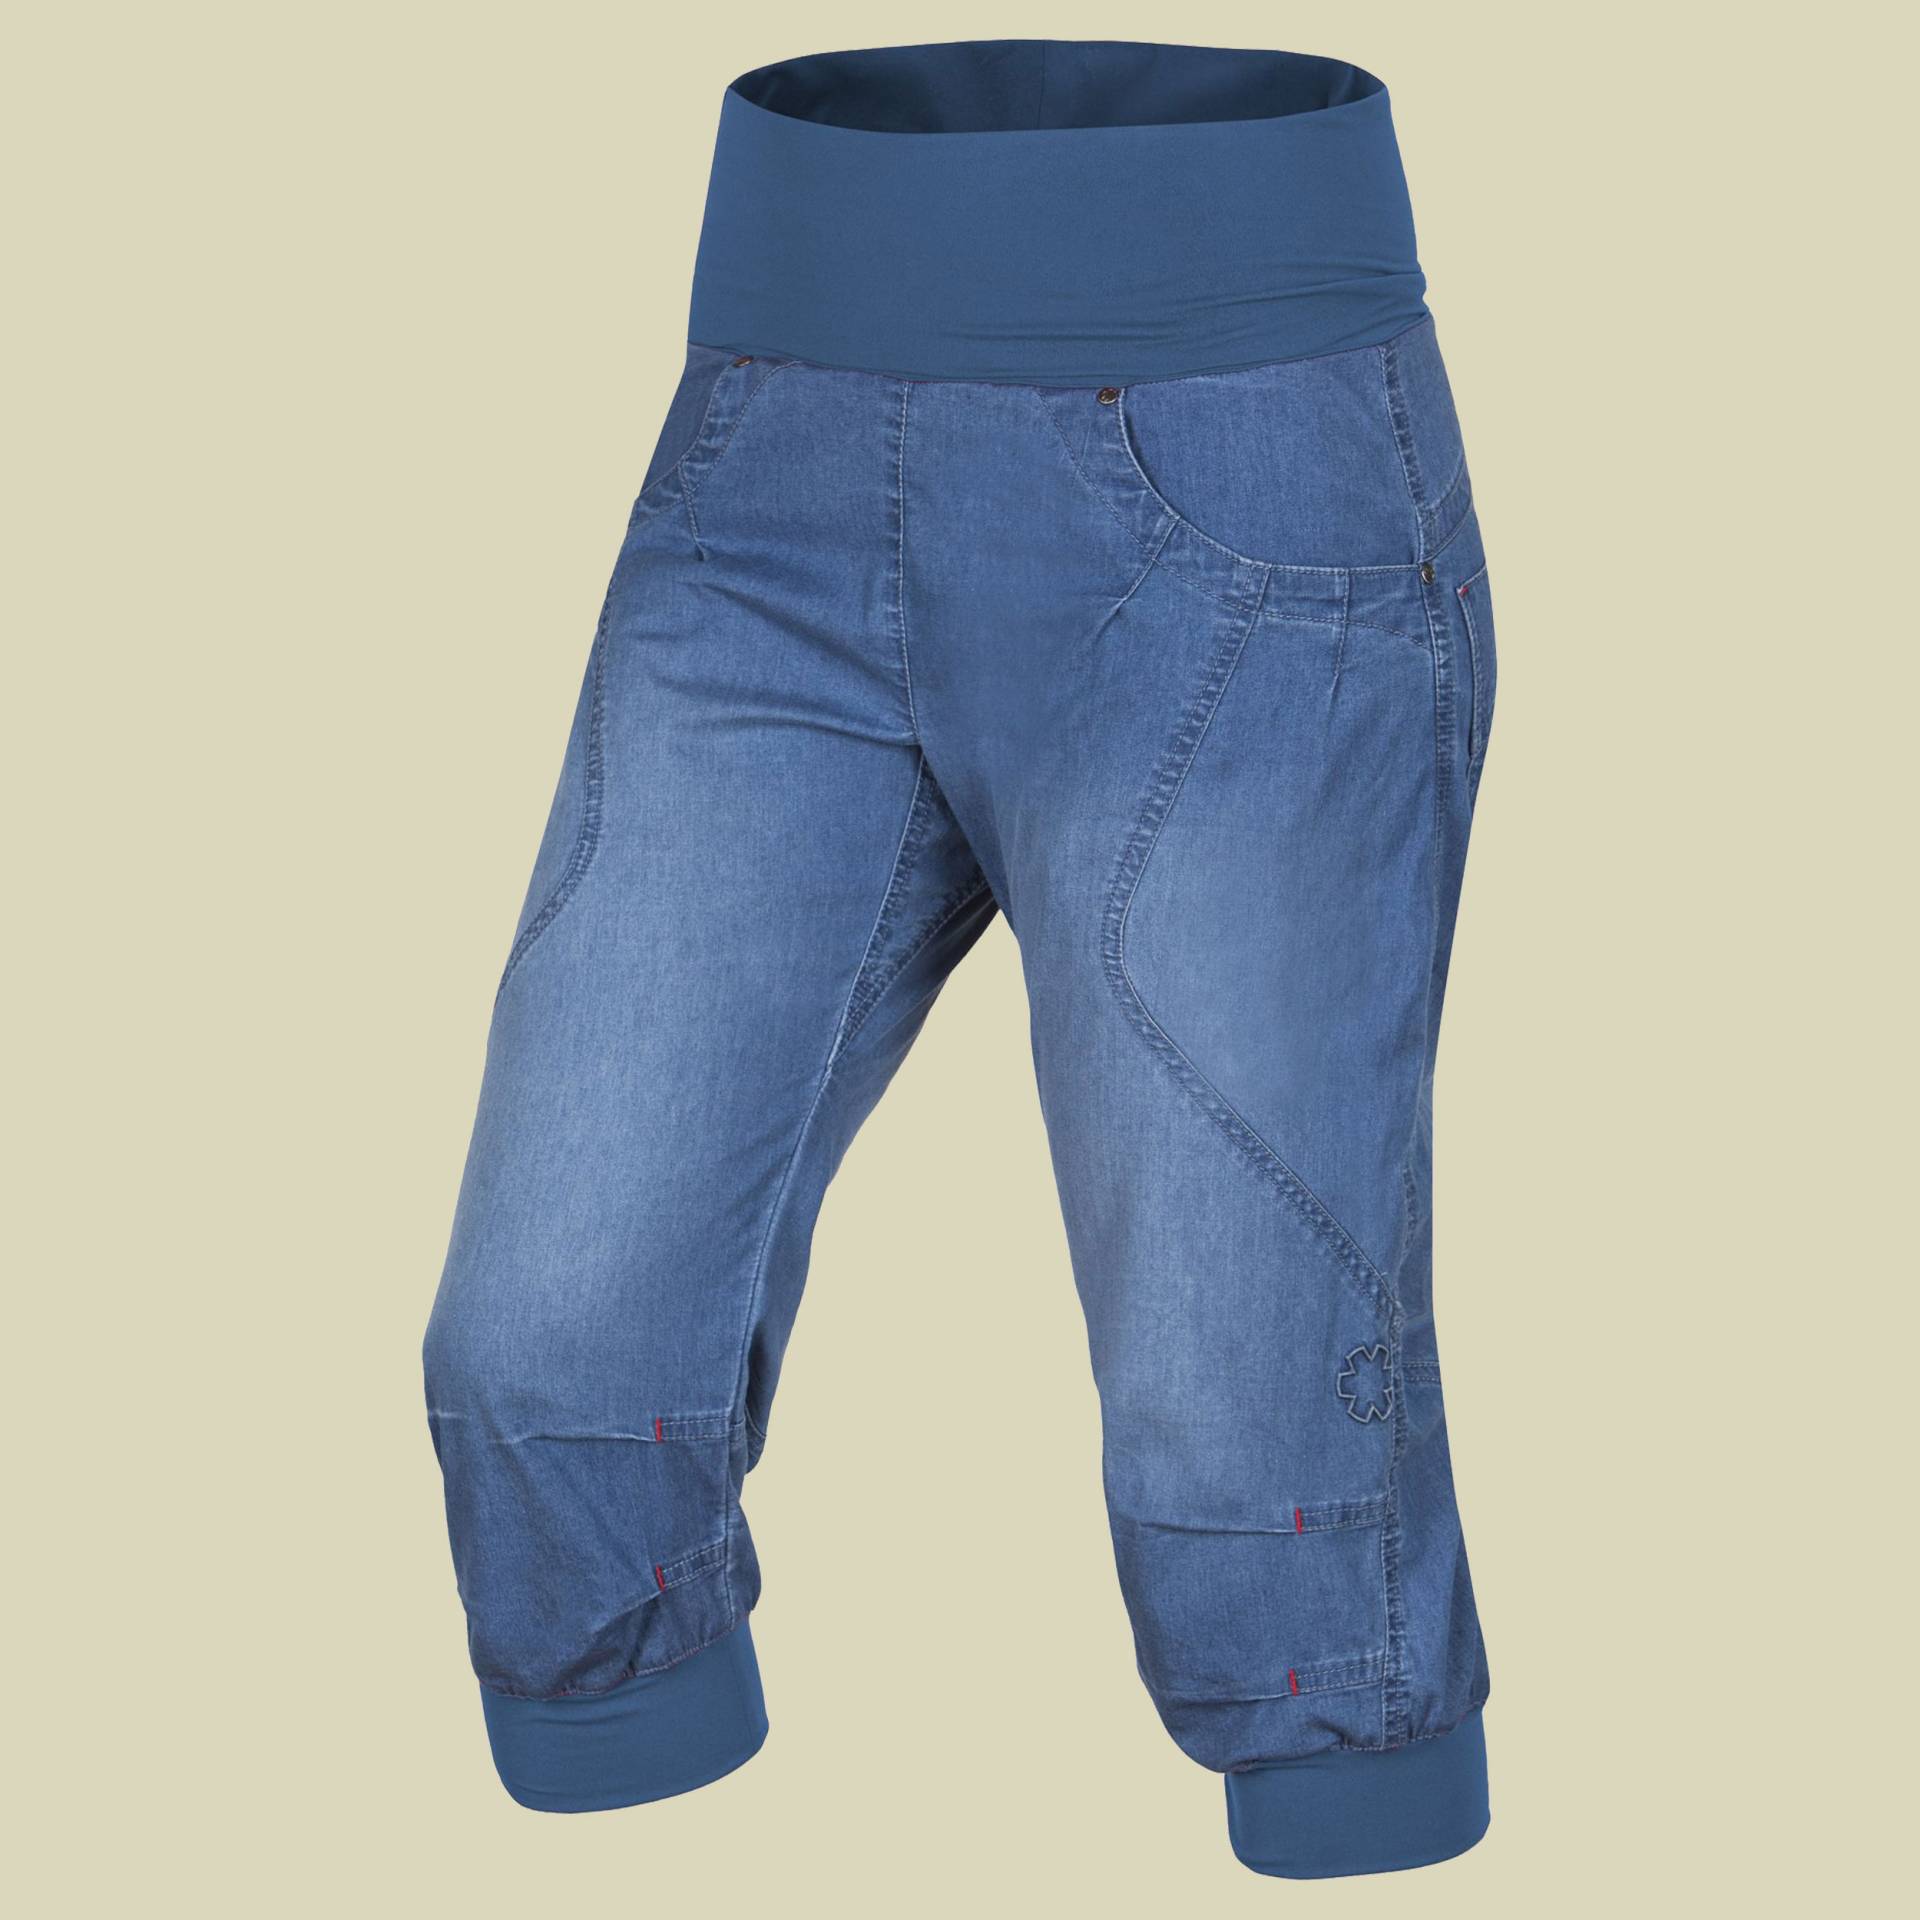 Noya Shorts Jeans Women Größe S Farbe middle blue von Ocun